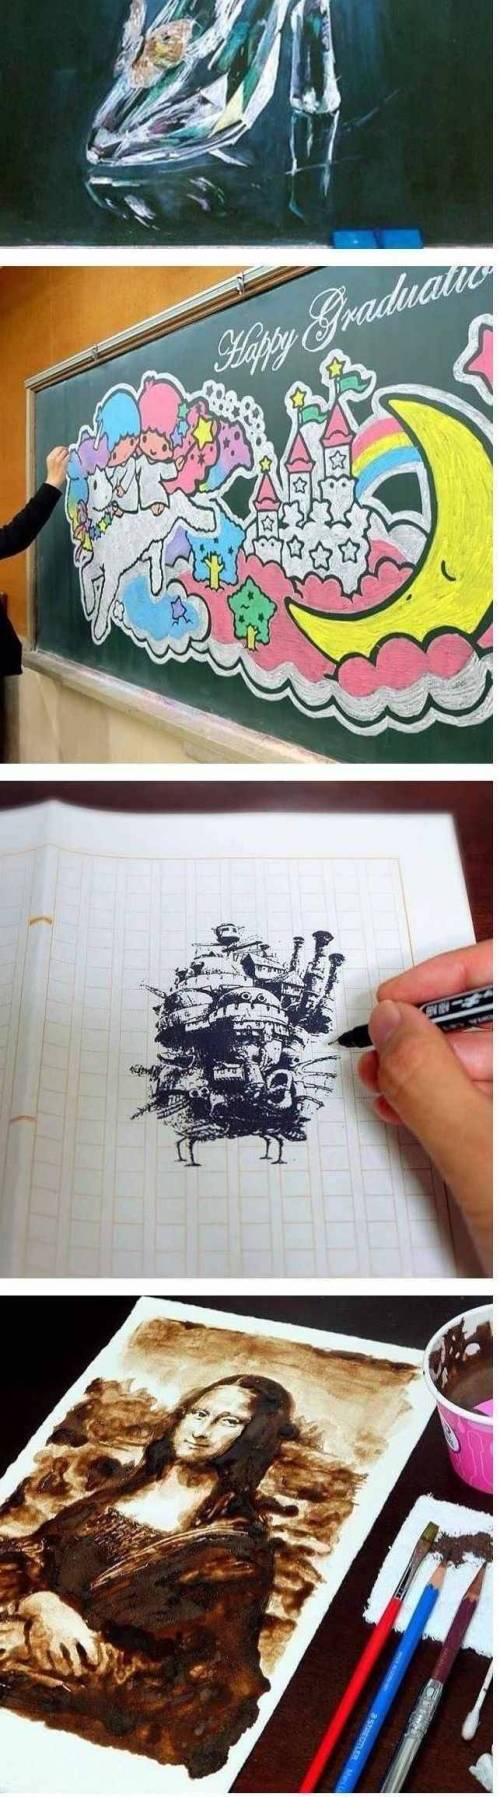 일본 교사의 칠판 그림 솜씨